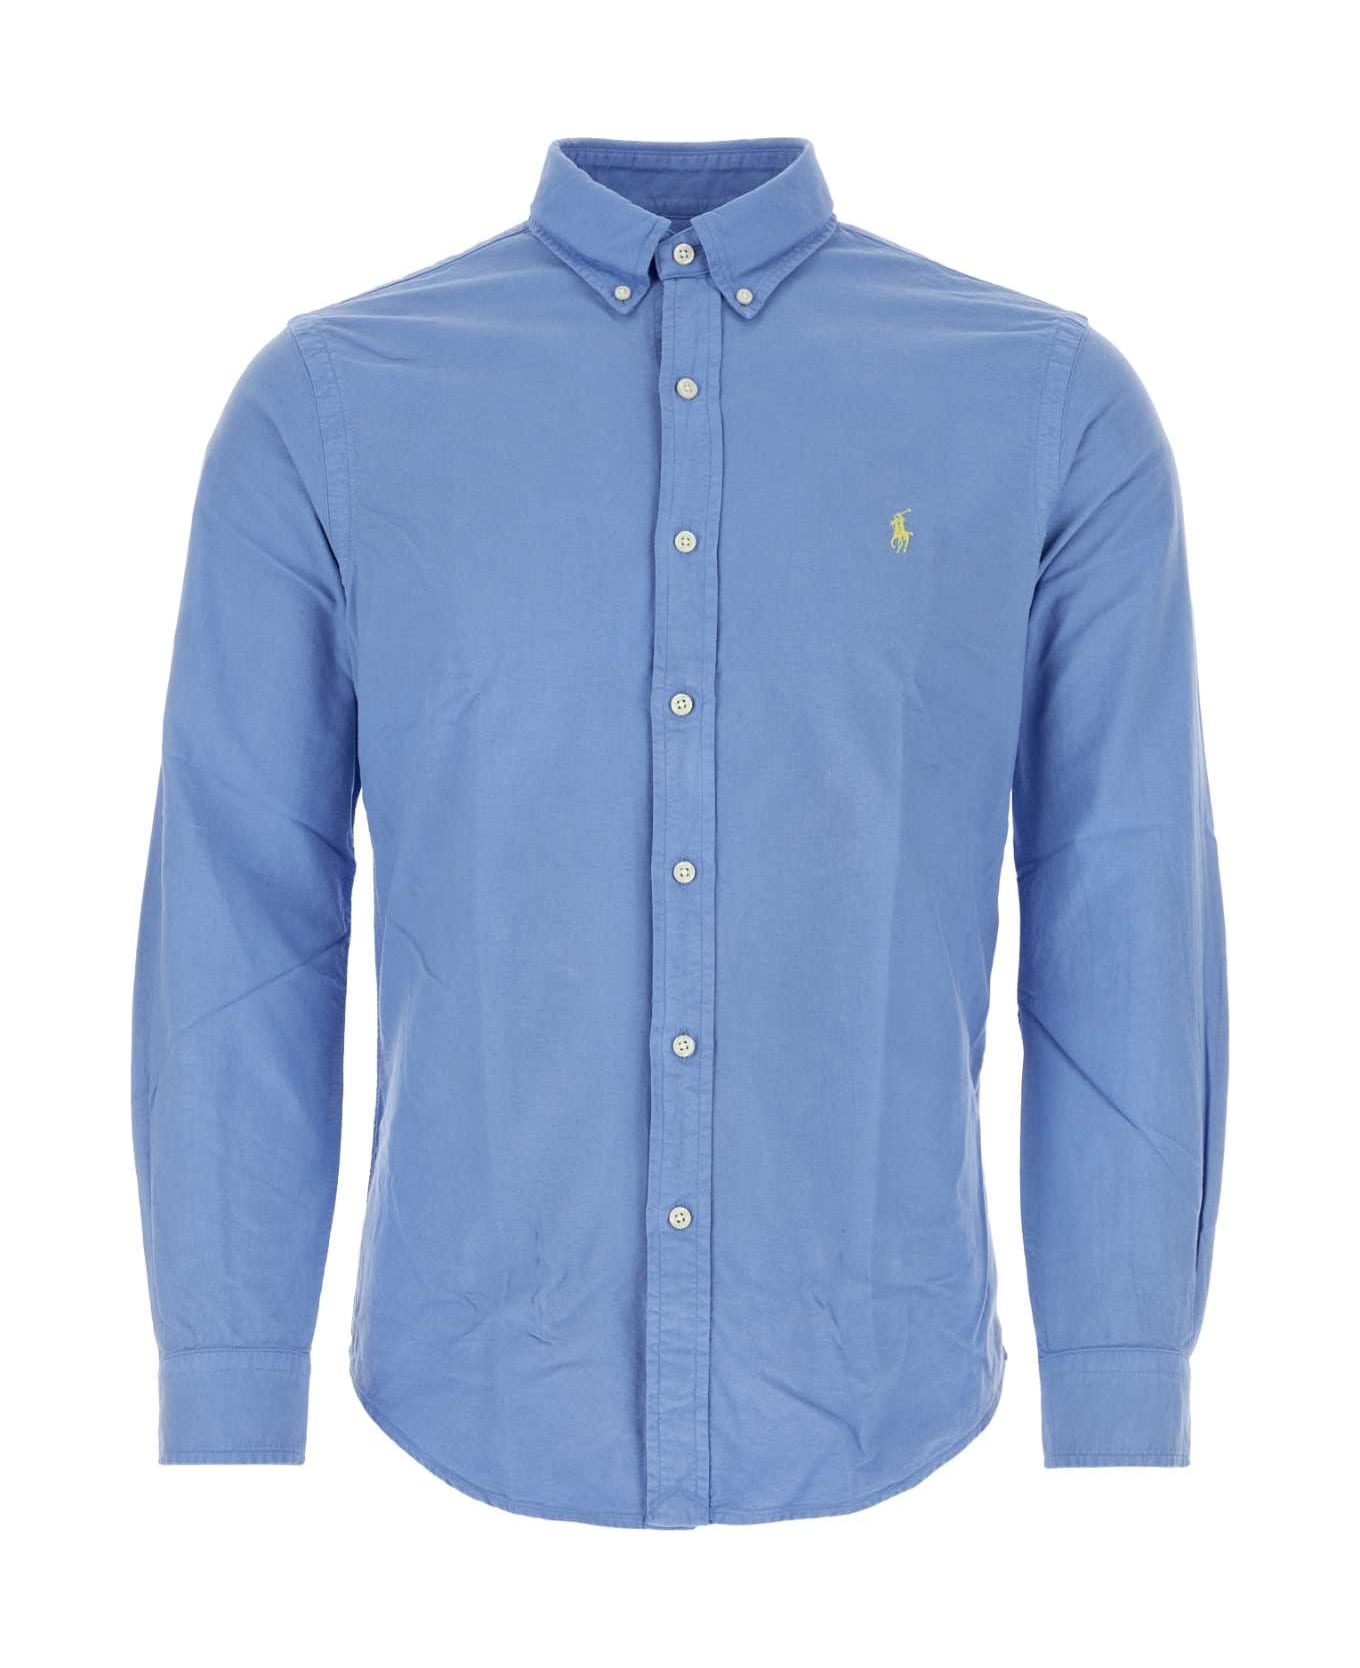 Polo Ralph Lauren Cerulean Blue Oxford Shirt - LIGHTBLUE